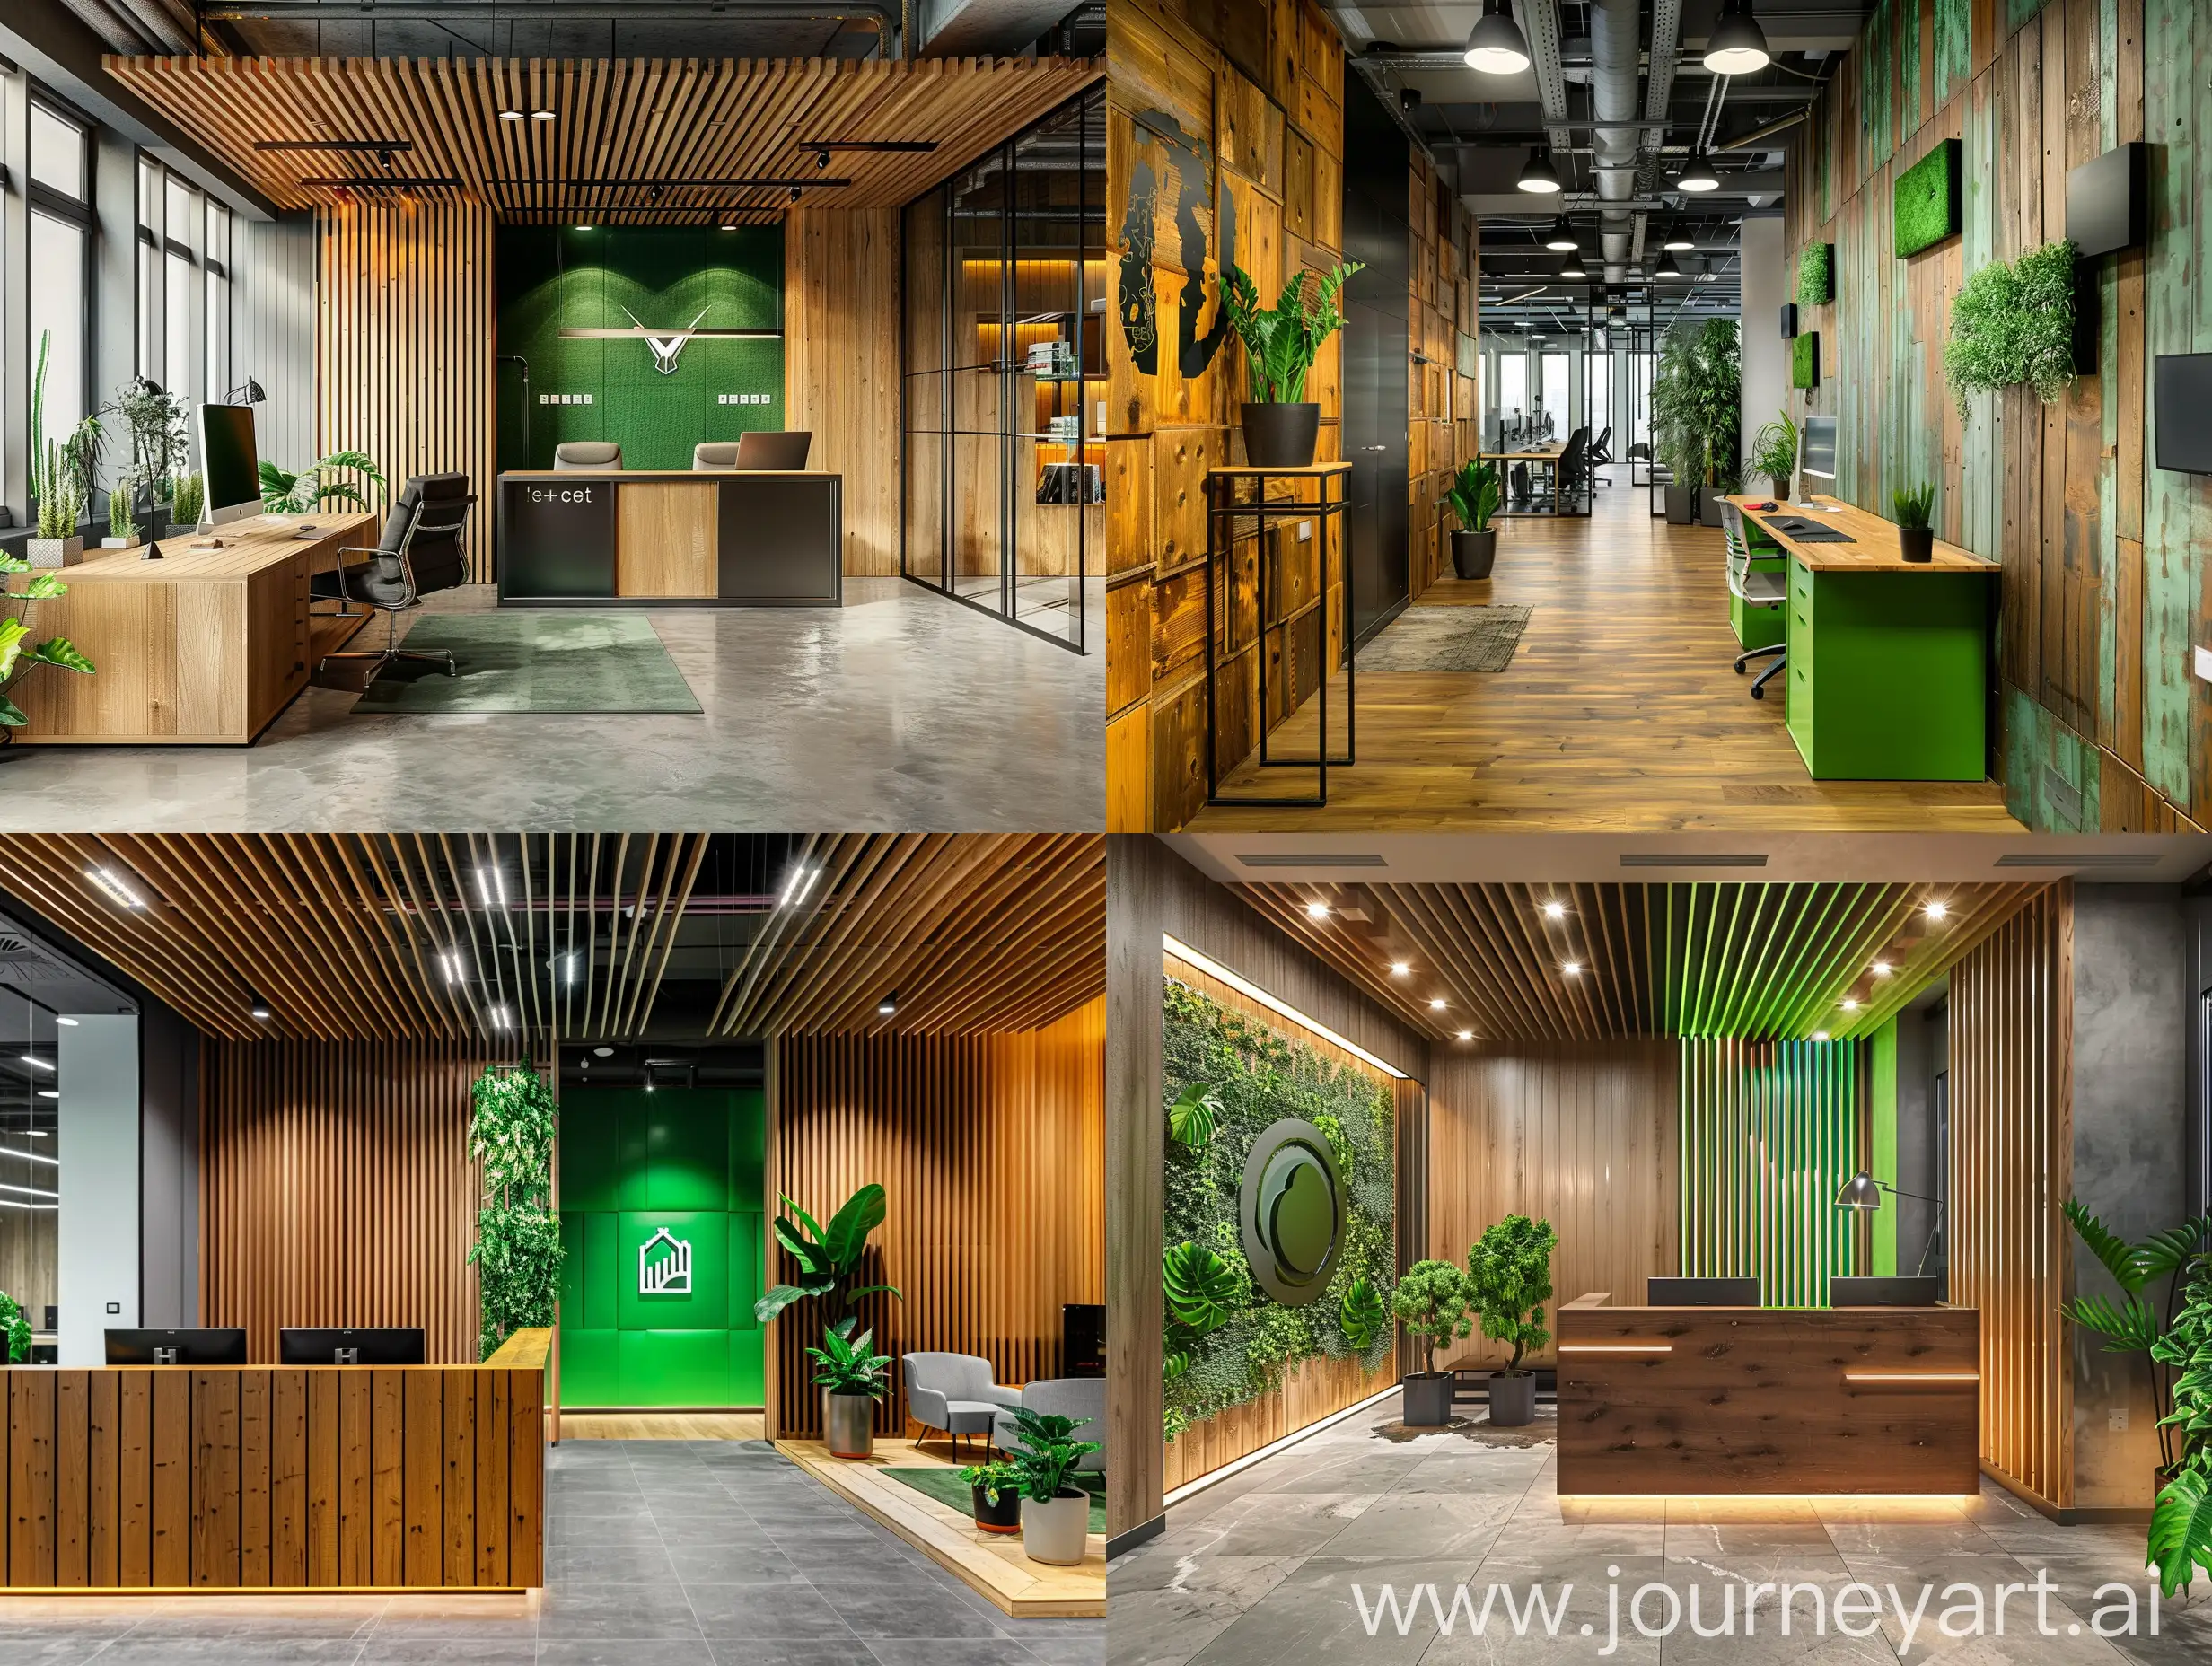 офис в оттенках дерева и металла со стеной, на которой расположен логотип компании в зеленом цвете